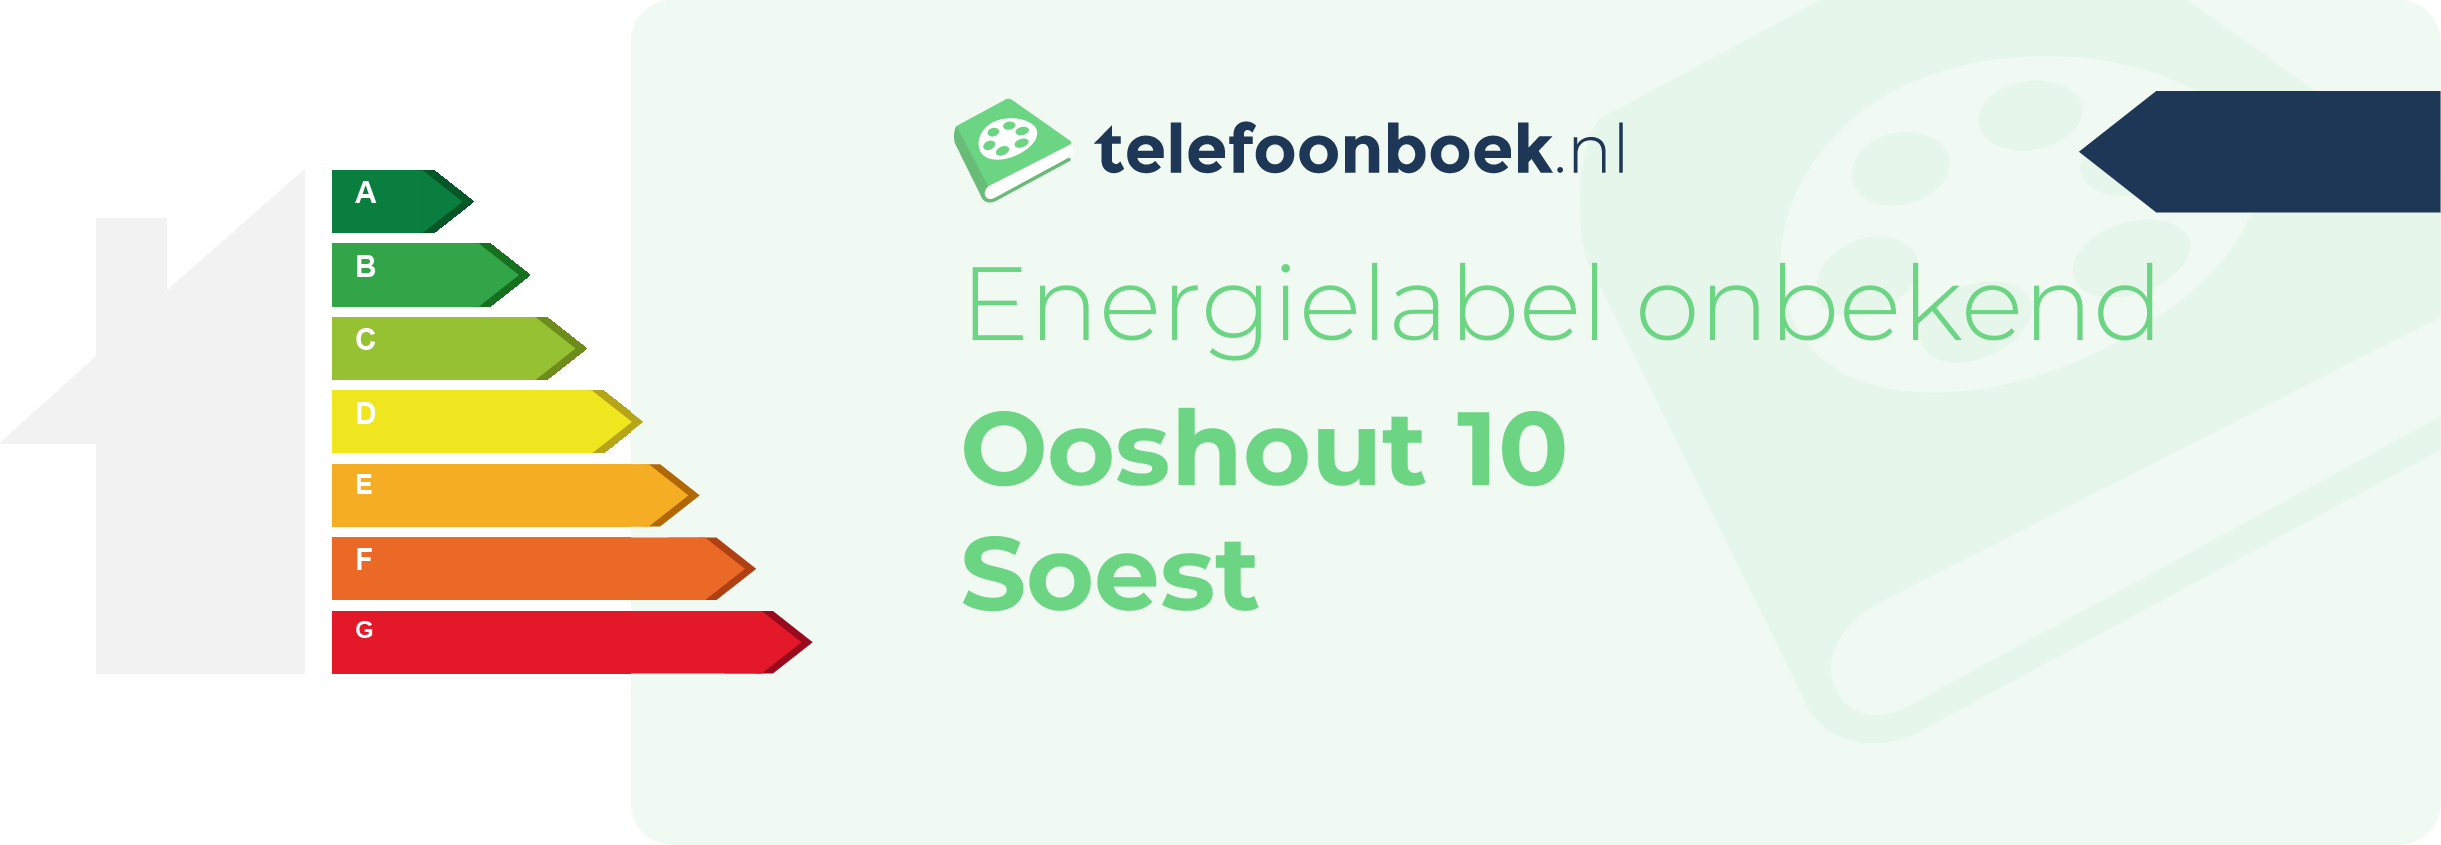 Energielabel Ooshout 10 Soest